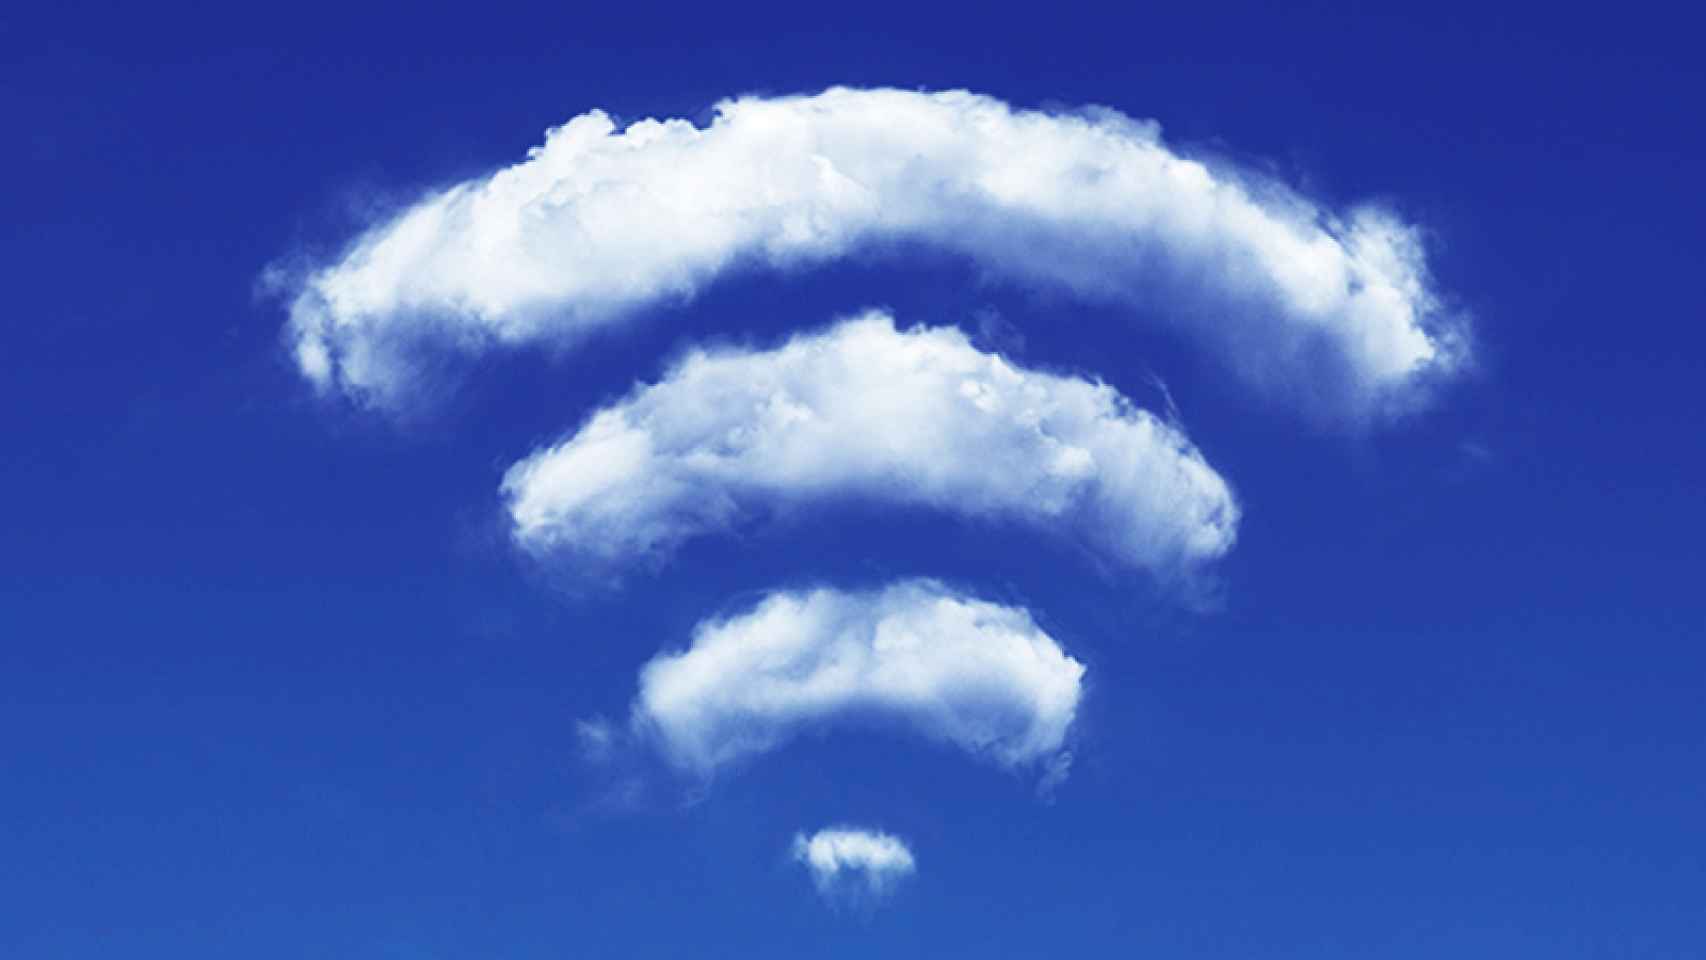 wifi-mejorar-conexion-internet